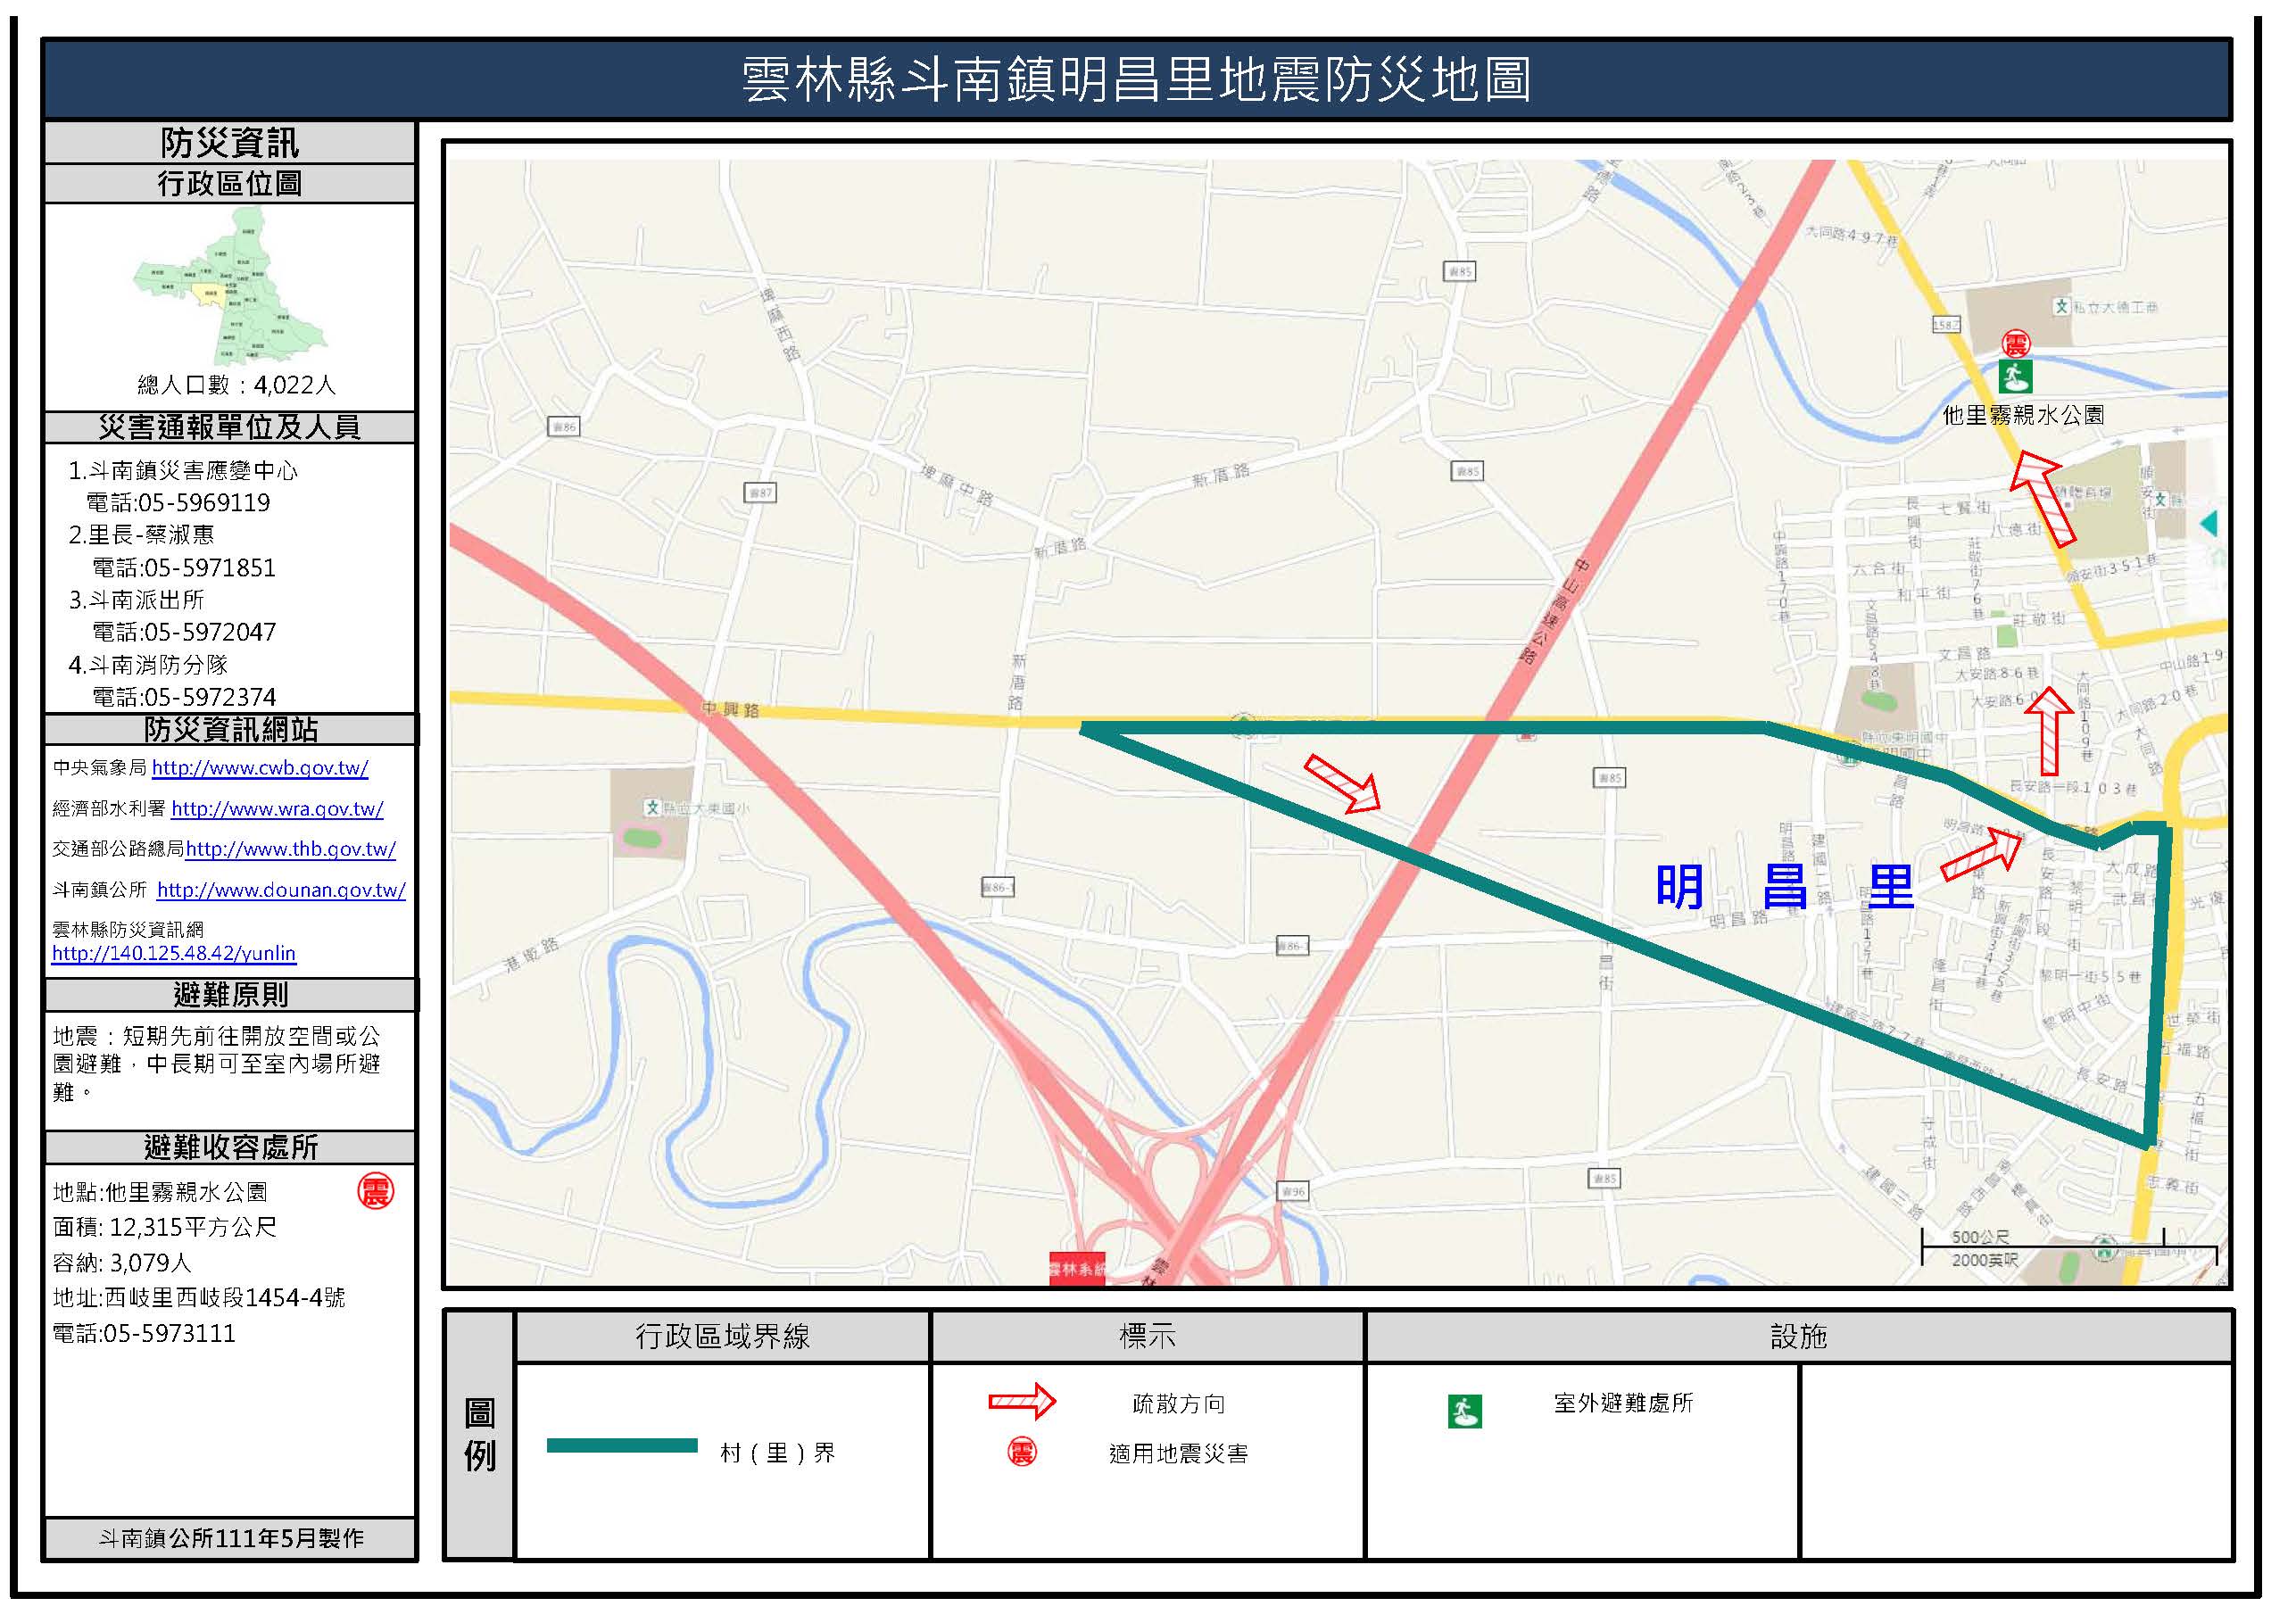 明昌里地震簡易防災地圖